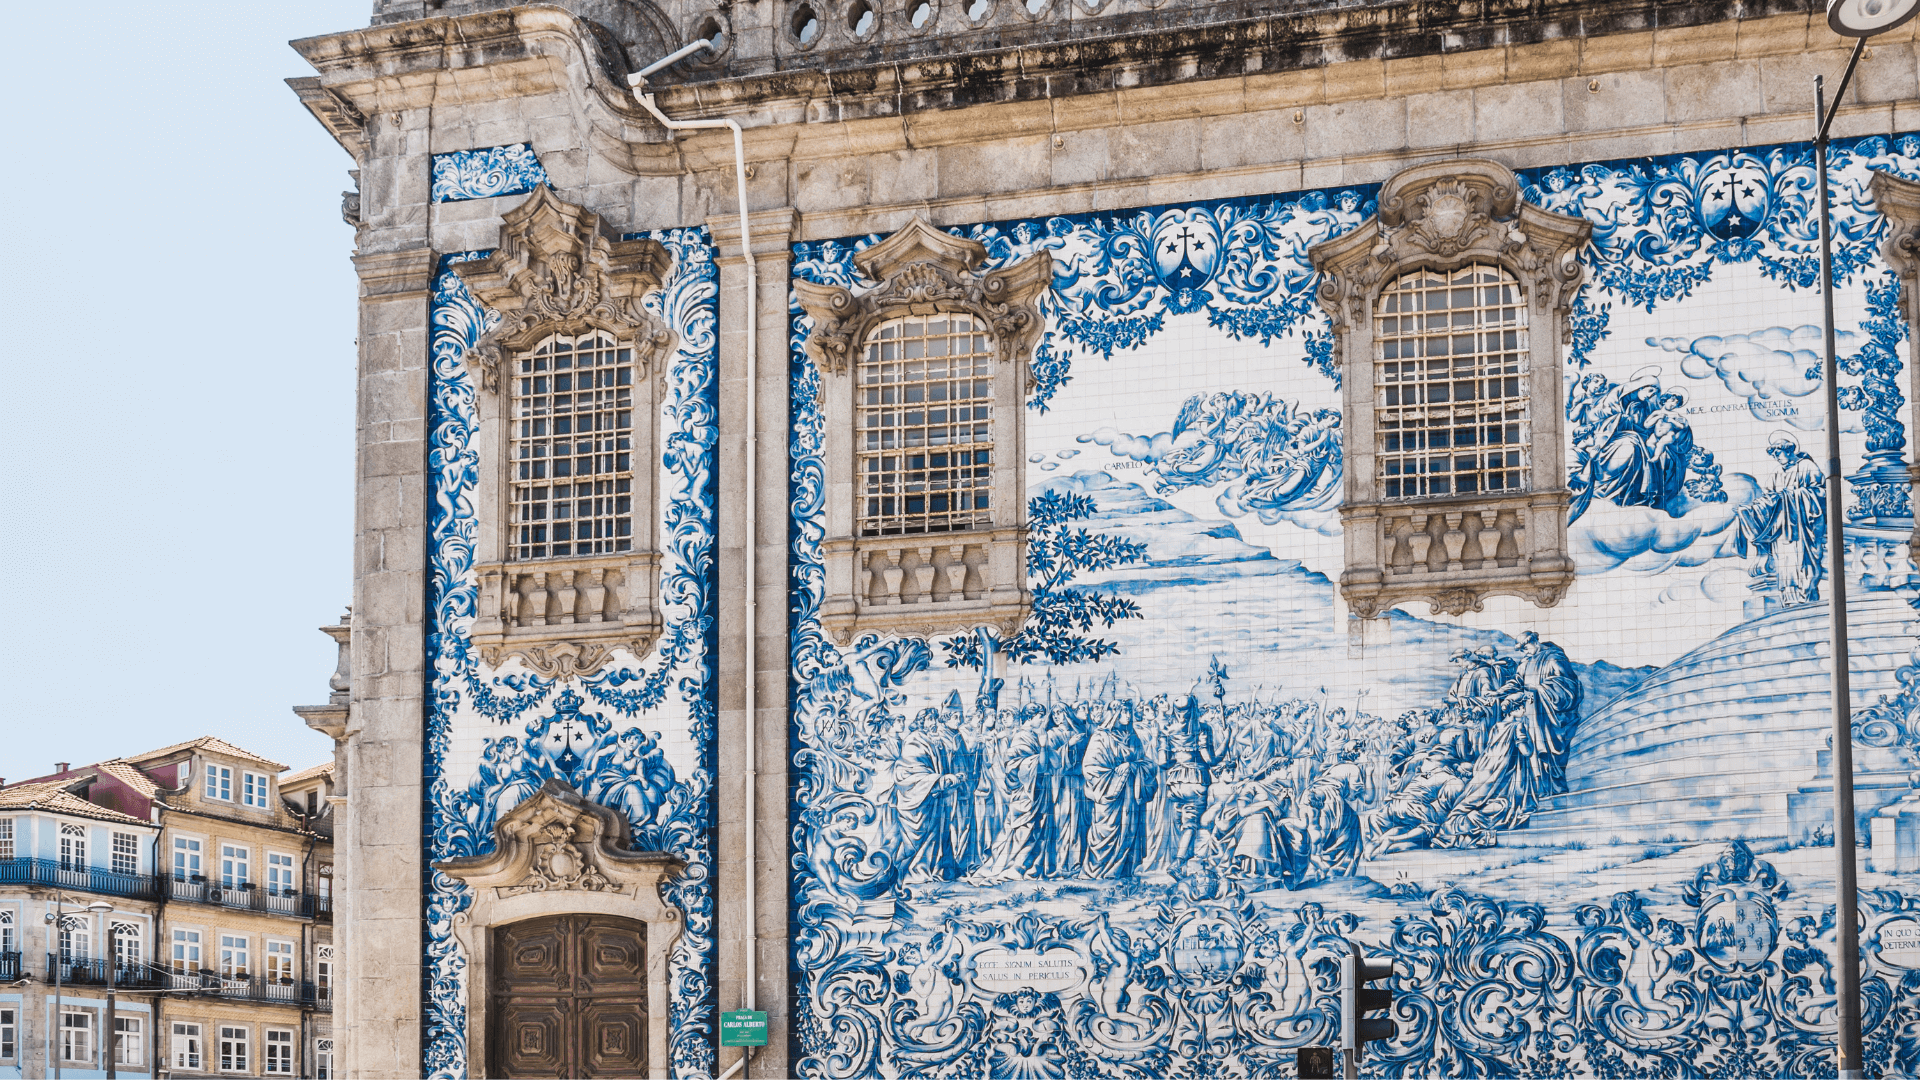 Igreja do Carmo, Porto